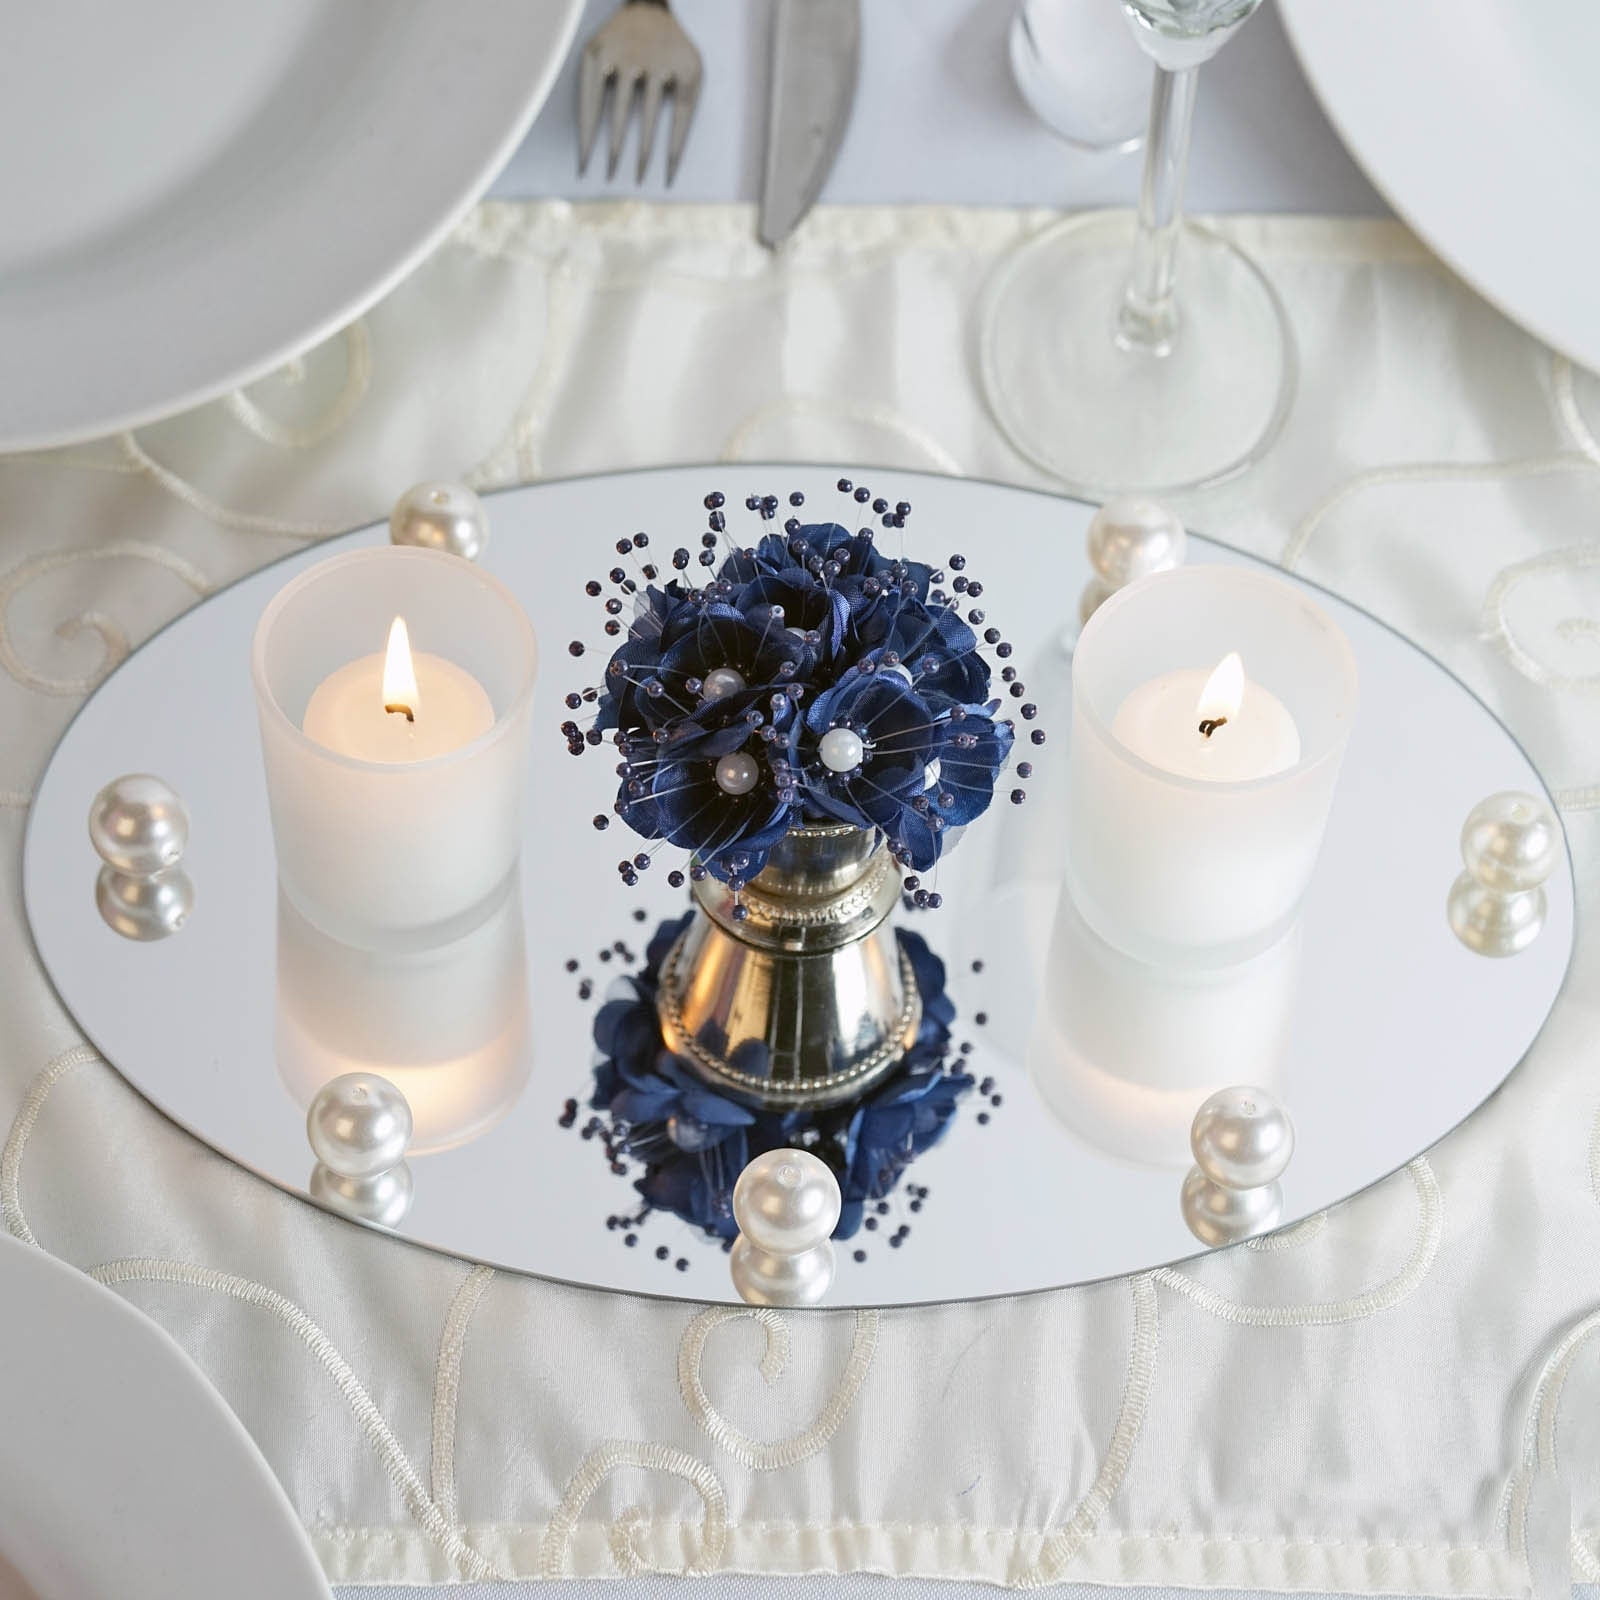 Mirrors Tableware Centerpiece  Event Wedding Banquest Rental